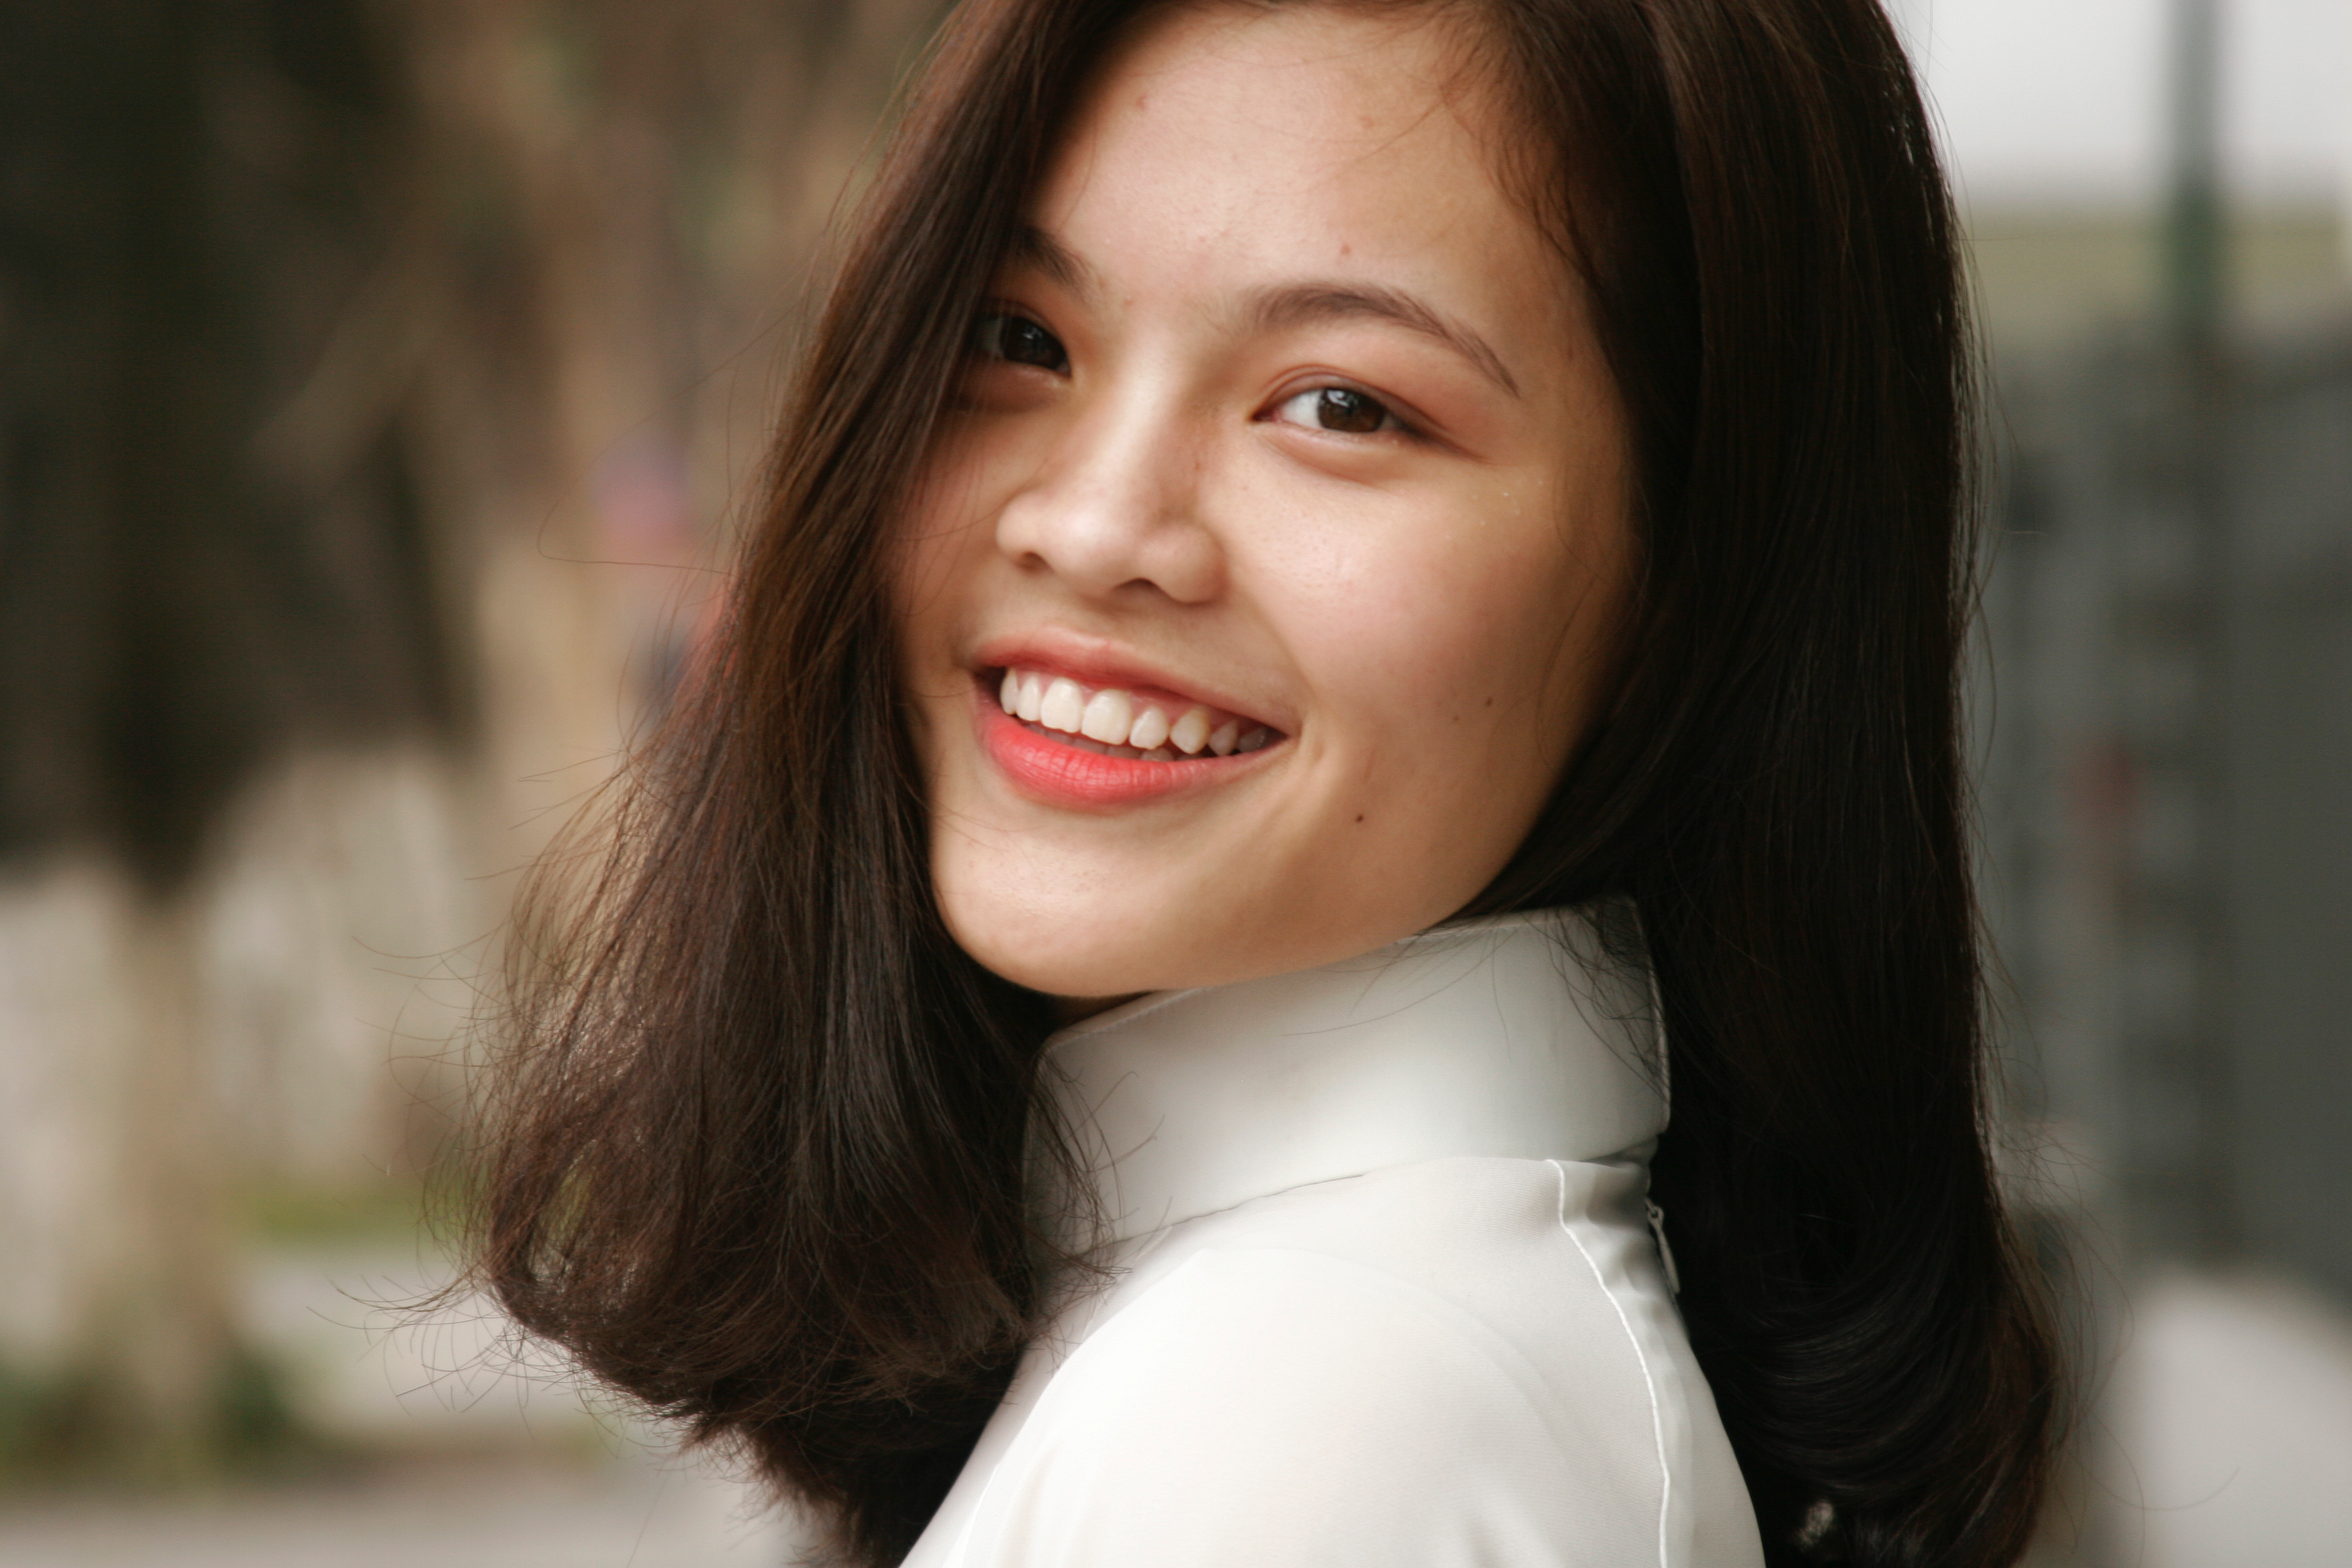 Smiling woman wearing white turtleneck top photo